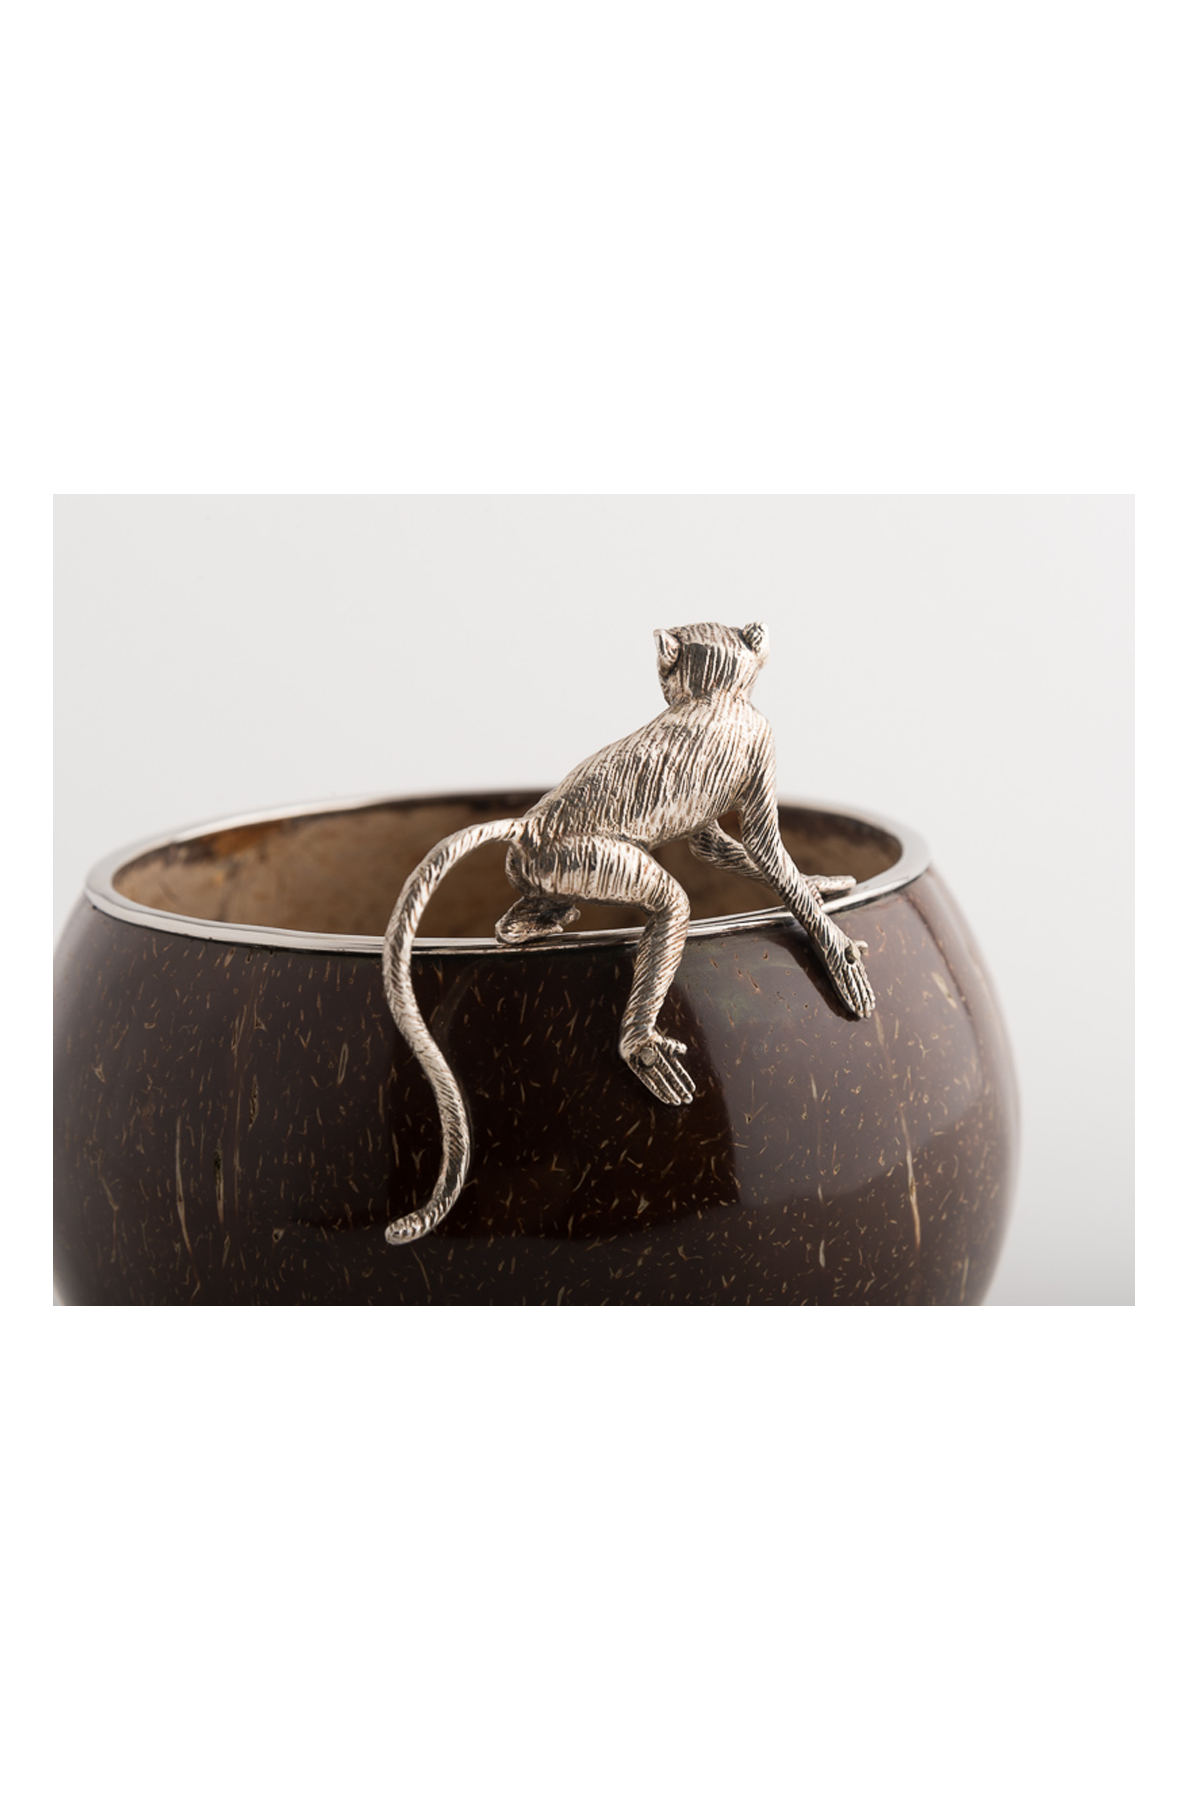 Madagascar Bowl – Monkey